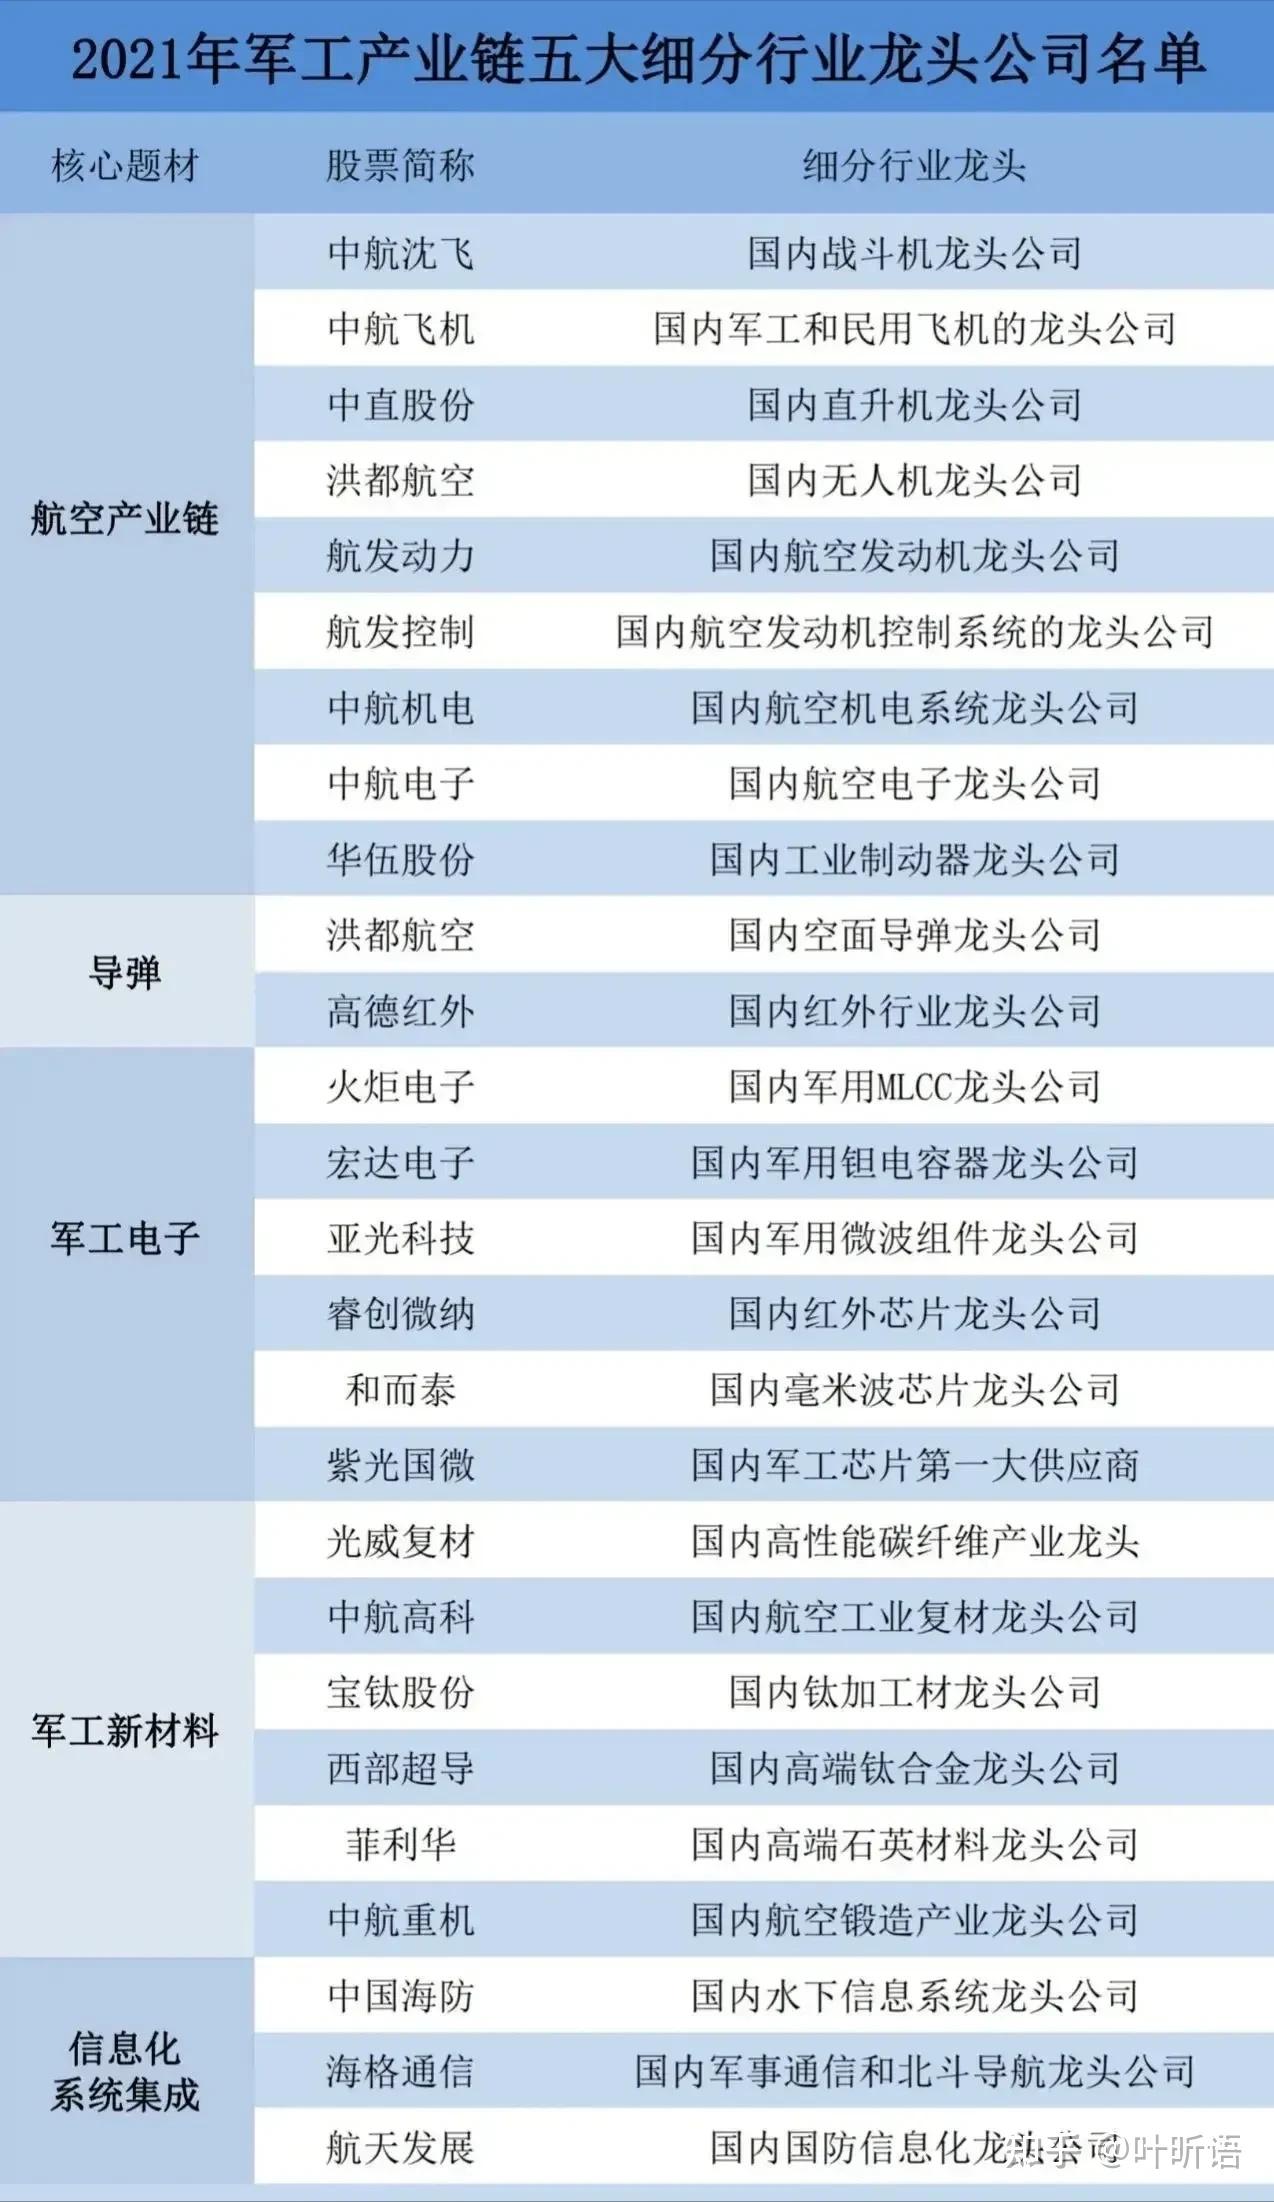 中国股市:军工板块最具发展前景潜力股名单一览,值得收藏!